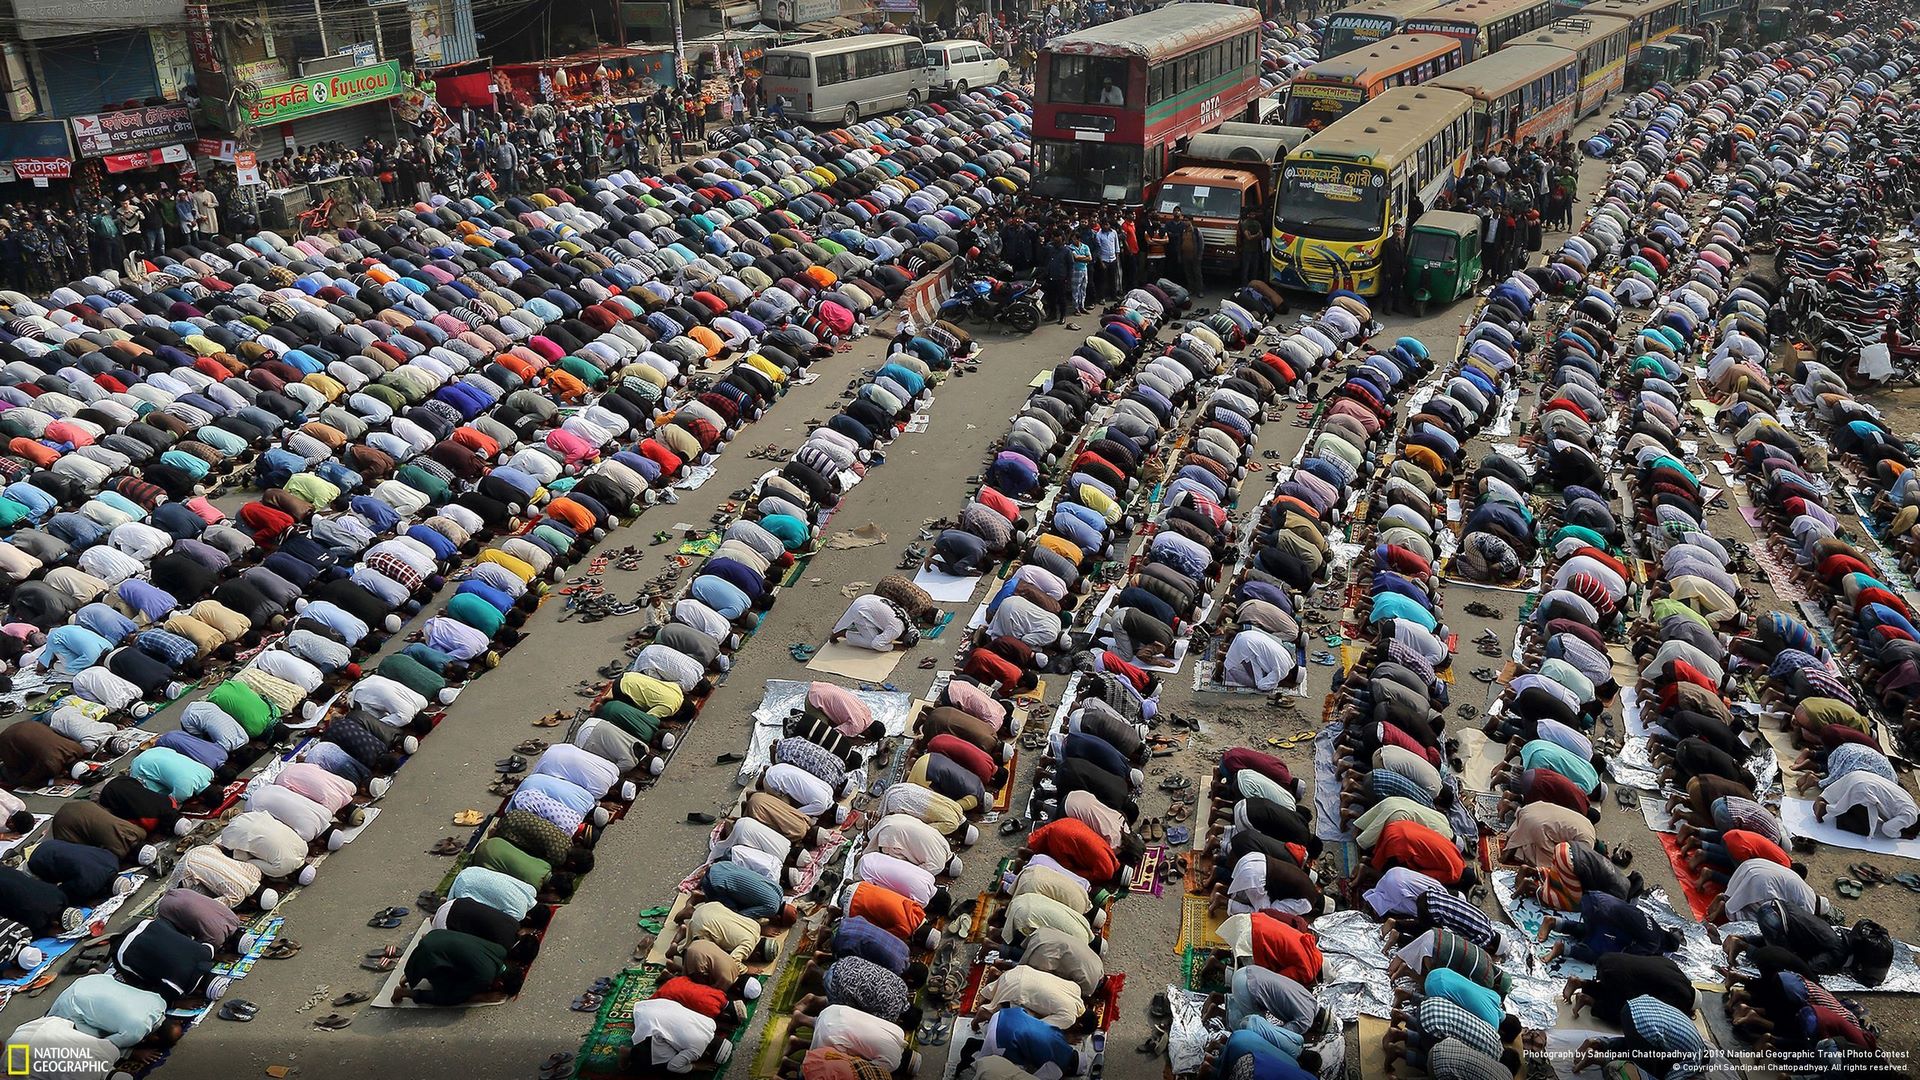 “Streets of Dhaka” (tạm dịch: “Đường phố Dhaka”) là tên bức ảnh đạt giải ba mục Đô thị do nhiếp ảnh gia Sandipani Chattopadhyay thực hiện. Trong ảnh là người dân đang cầu nguyện trên đường phố ở thủ đô Dhaka, Bangladesh trong lễ Biswa Ijtema - một lễ hội Hồi giáo lớn thứ 2 ở nước này, sau lễ hành hương tới thánh địa Mecca. Lễ hội Biswa Ijtema lần đầu tiên được tổ chức vào những năm 1960 tại Tongi, cách Dhaka 30 km về phía Bắc.